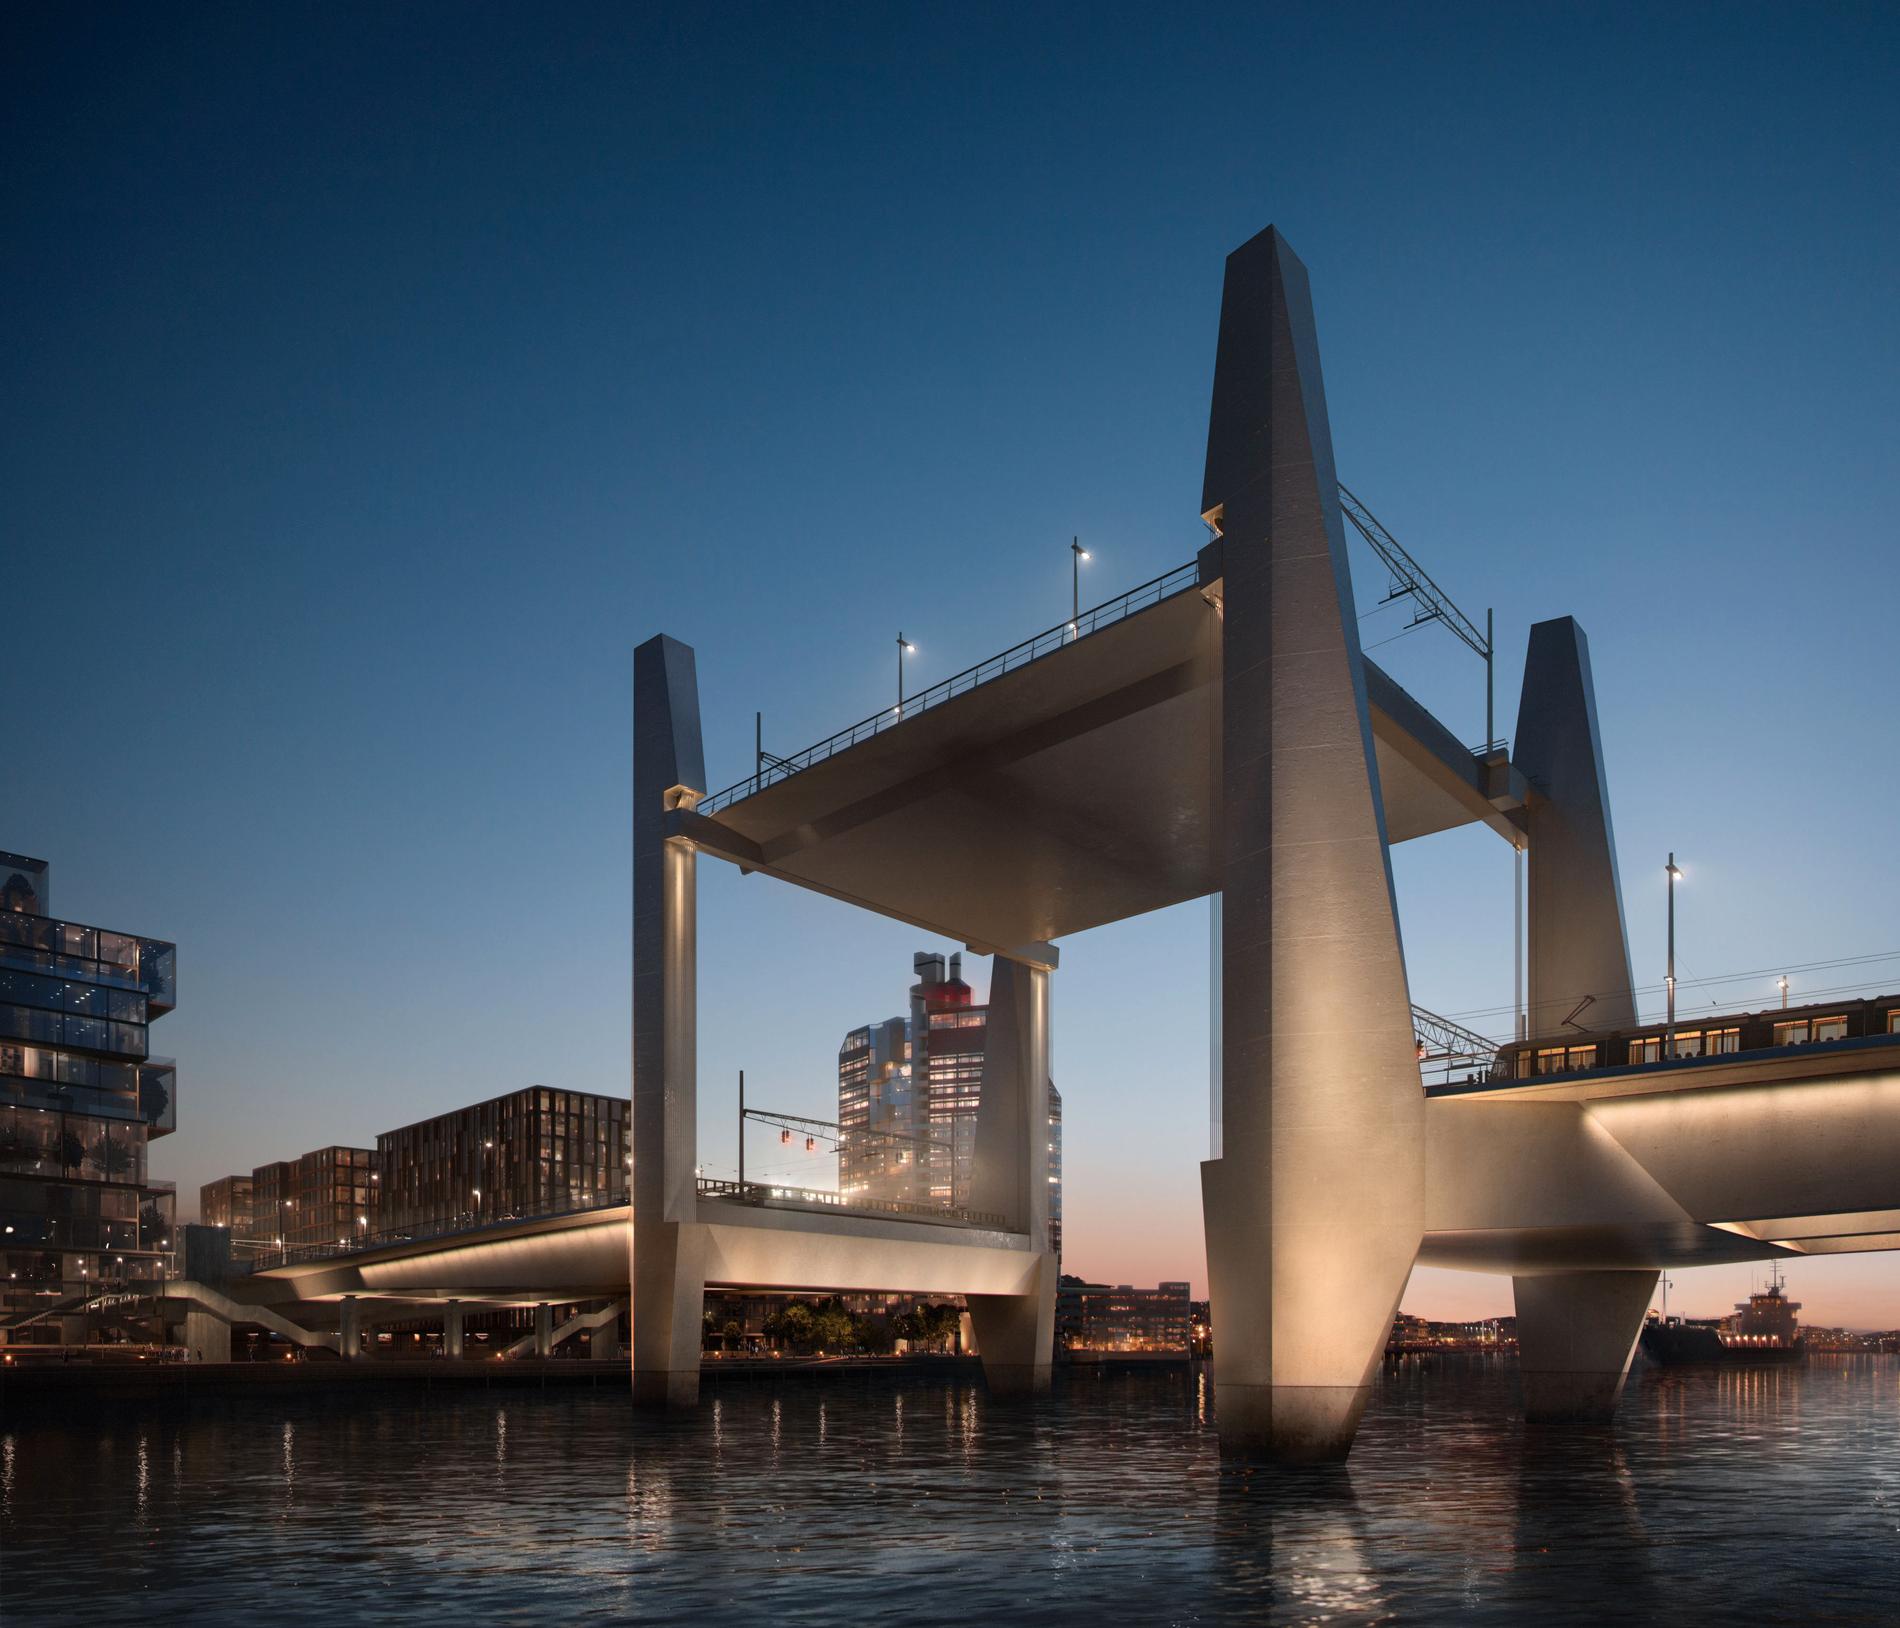 Hisingsbron har ett lyftspann där en del av vägbanan kommer att hissas 16 meter rakt upp i luften för att släppa fram fartyg på älven. Visualisering som visar hur Hisingsbron i Göteborg är tänkt att se ut när den är klar 2021.